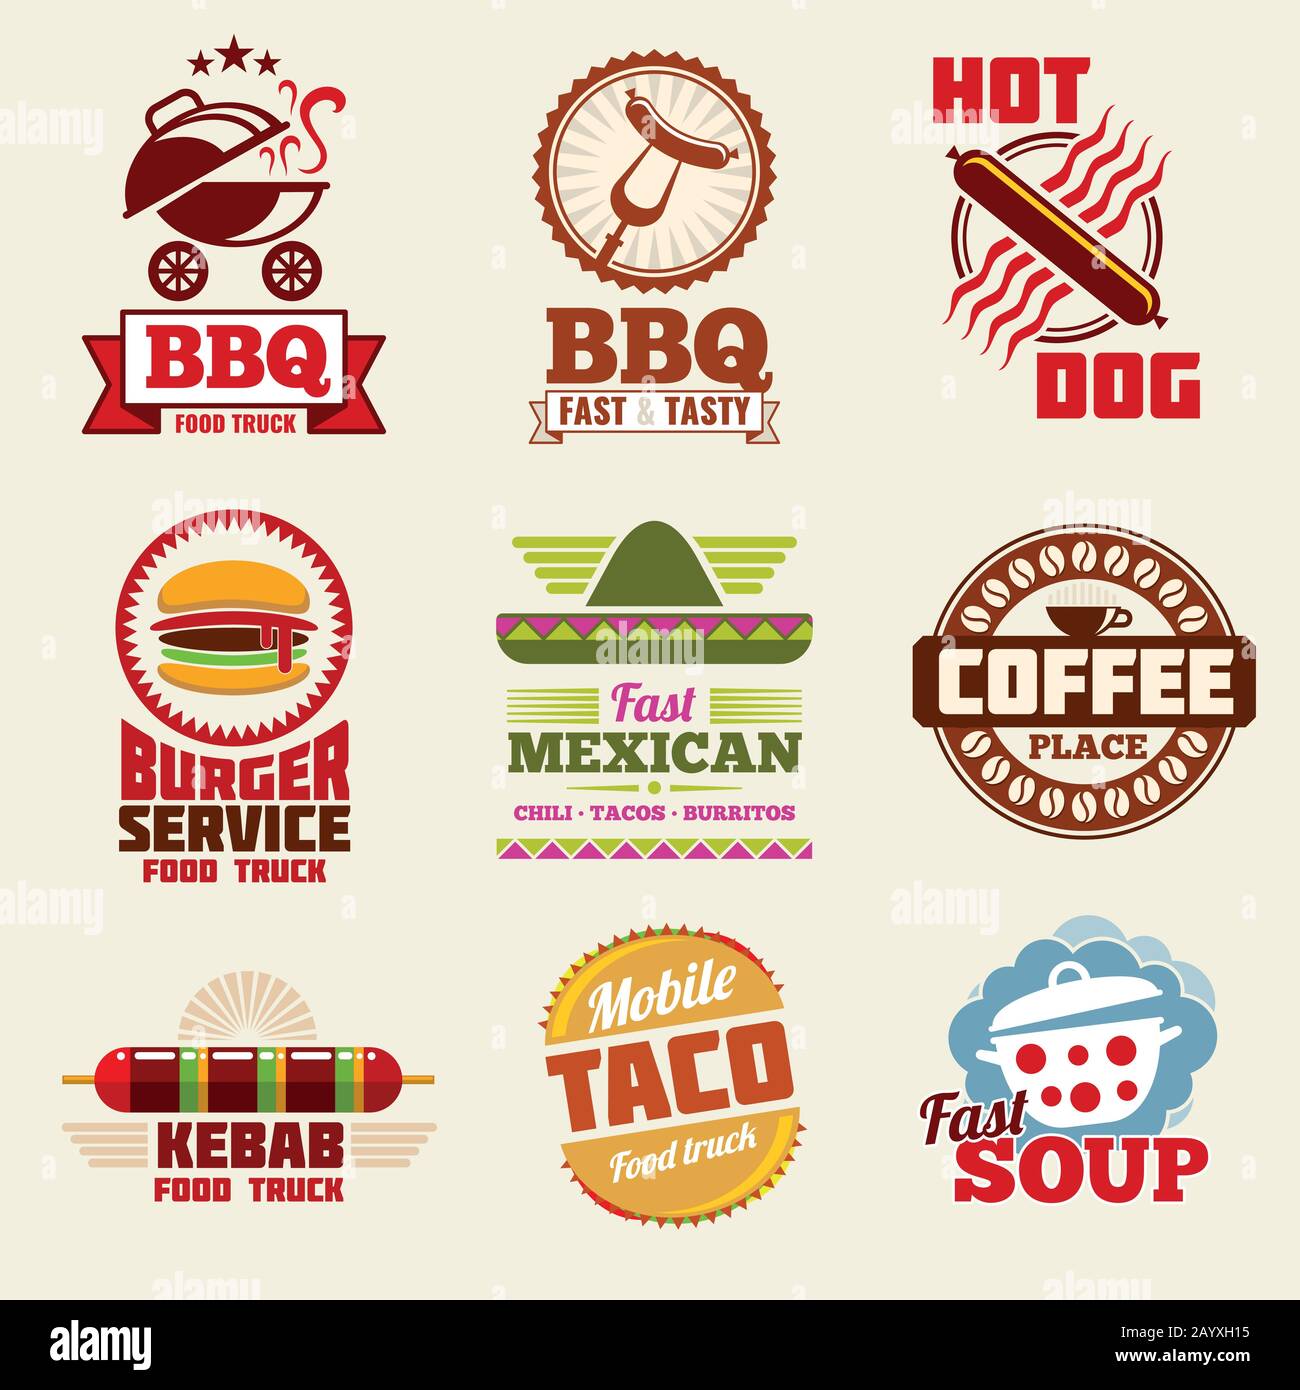 Conjunto de logotipos, emblemas, etiquetas y distintivos de Fast Food Vector. Emblema y distintivo de comida rápida del restaurante, ilustración vintage del logotipo de comida rápida Ilustración del Vector